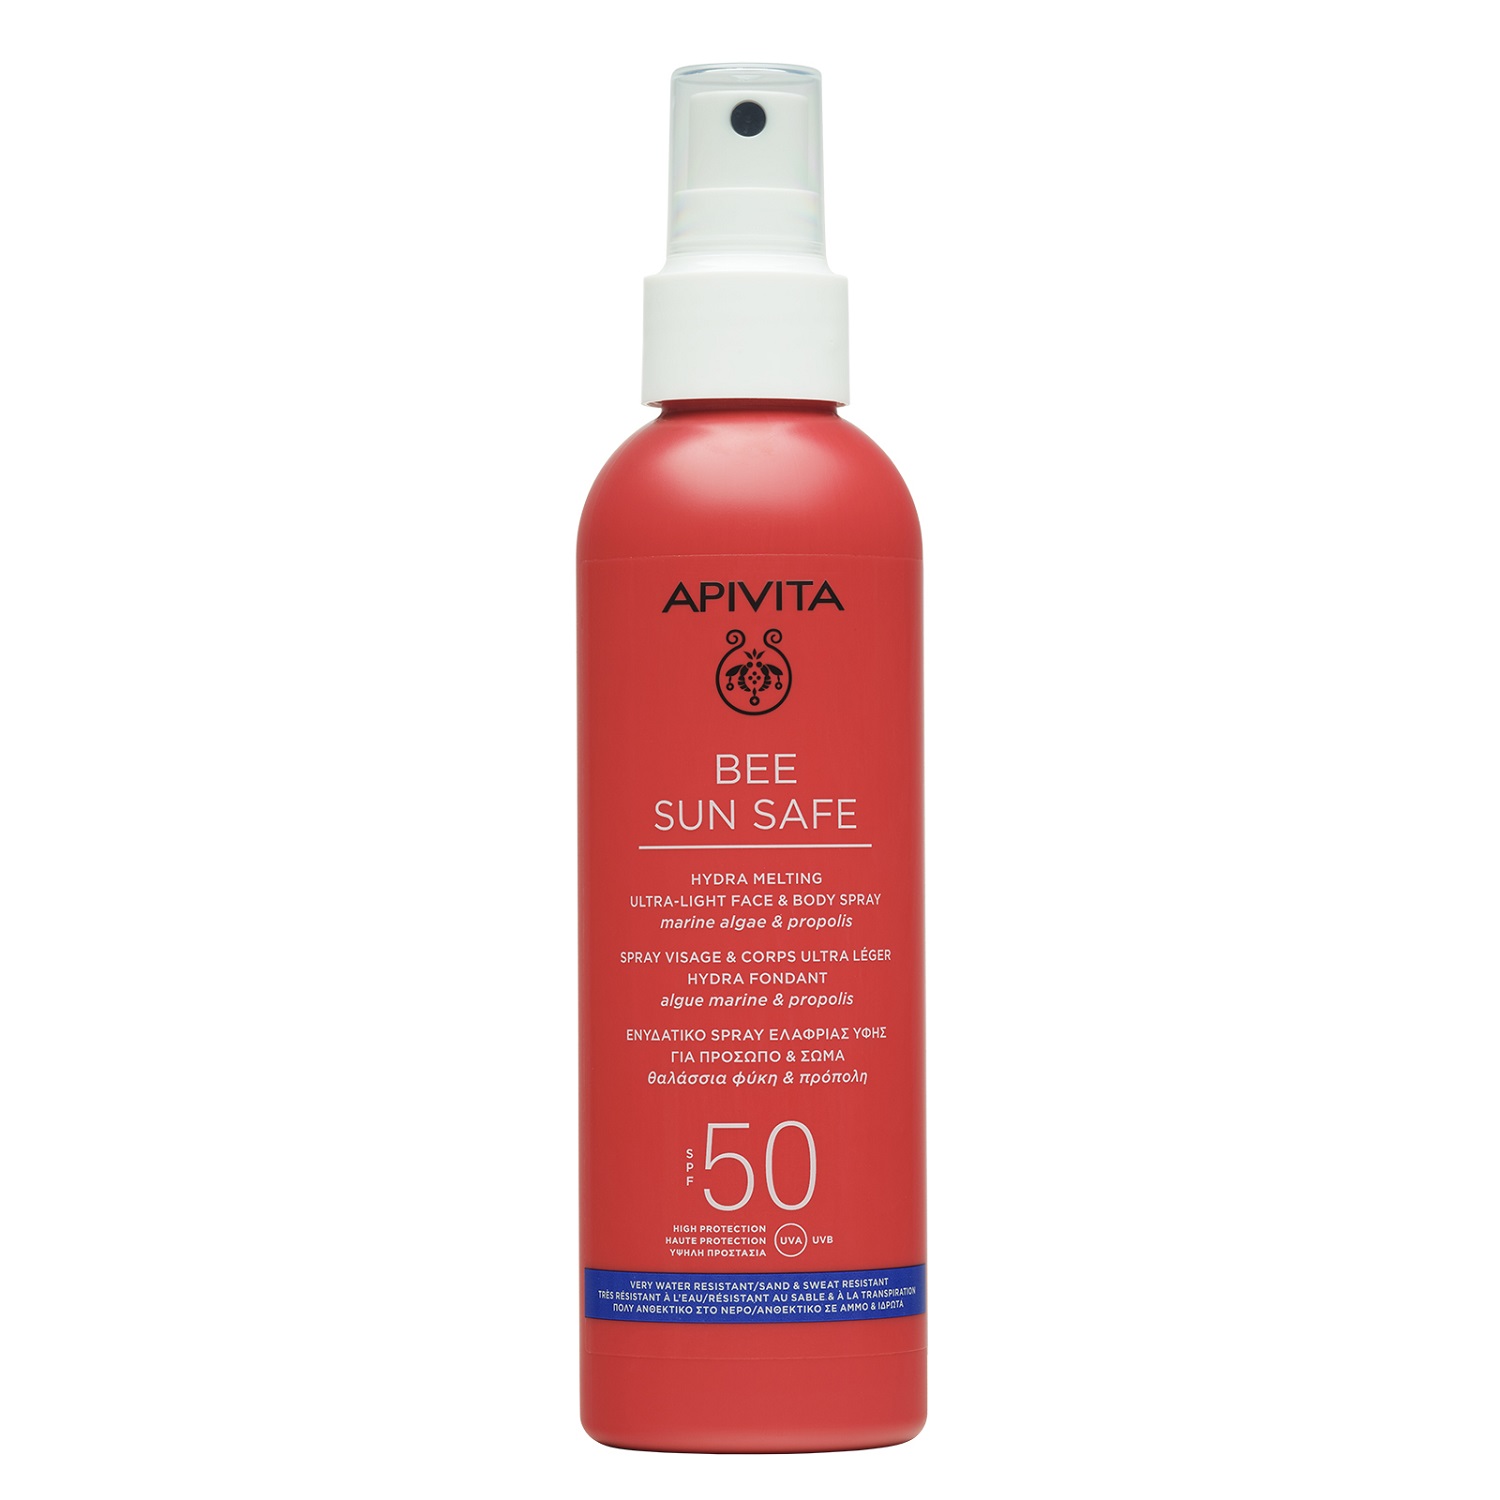 Апивита Солнцезащитный тающий ультра-легкий спрей для лица и тела SPF50, 200 мл (Apivita, Bee Sun Safe) фото 0